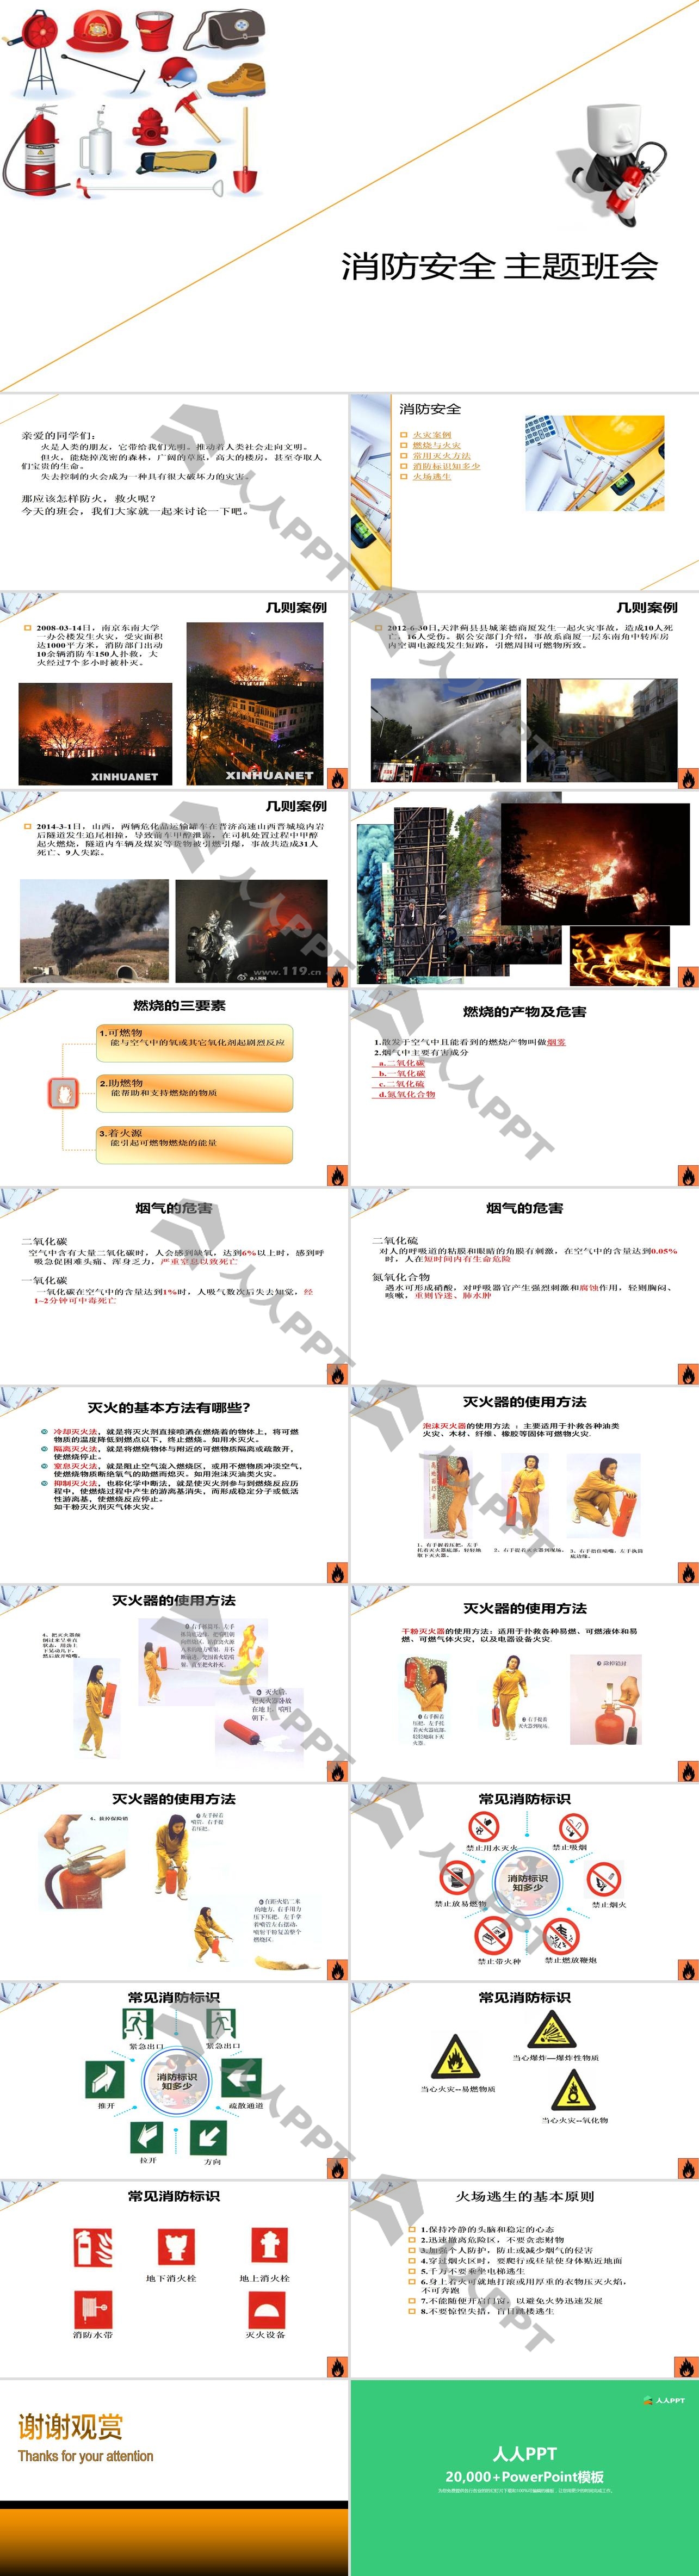 《消防安全主题班会》PPT下载长图